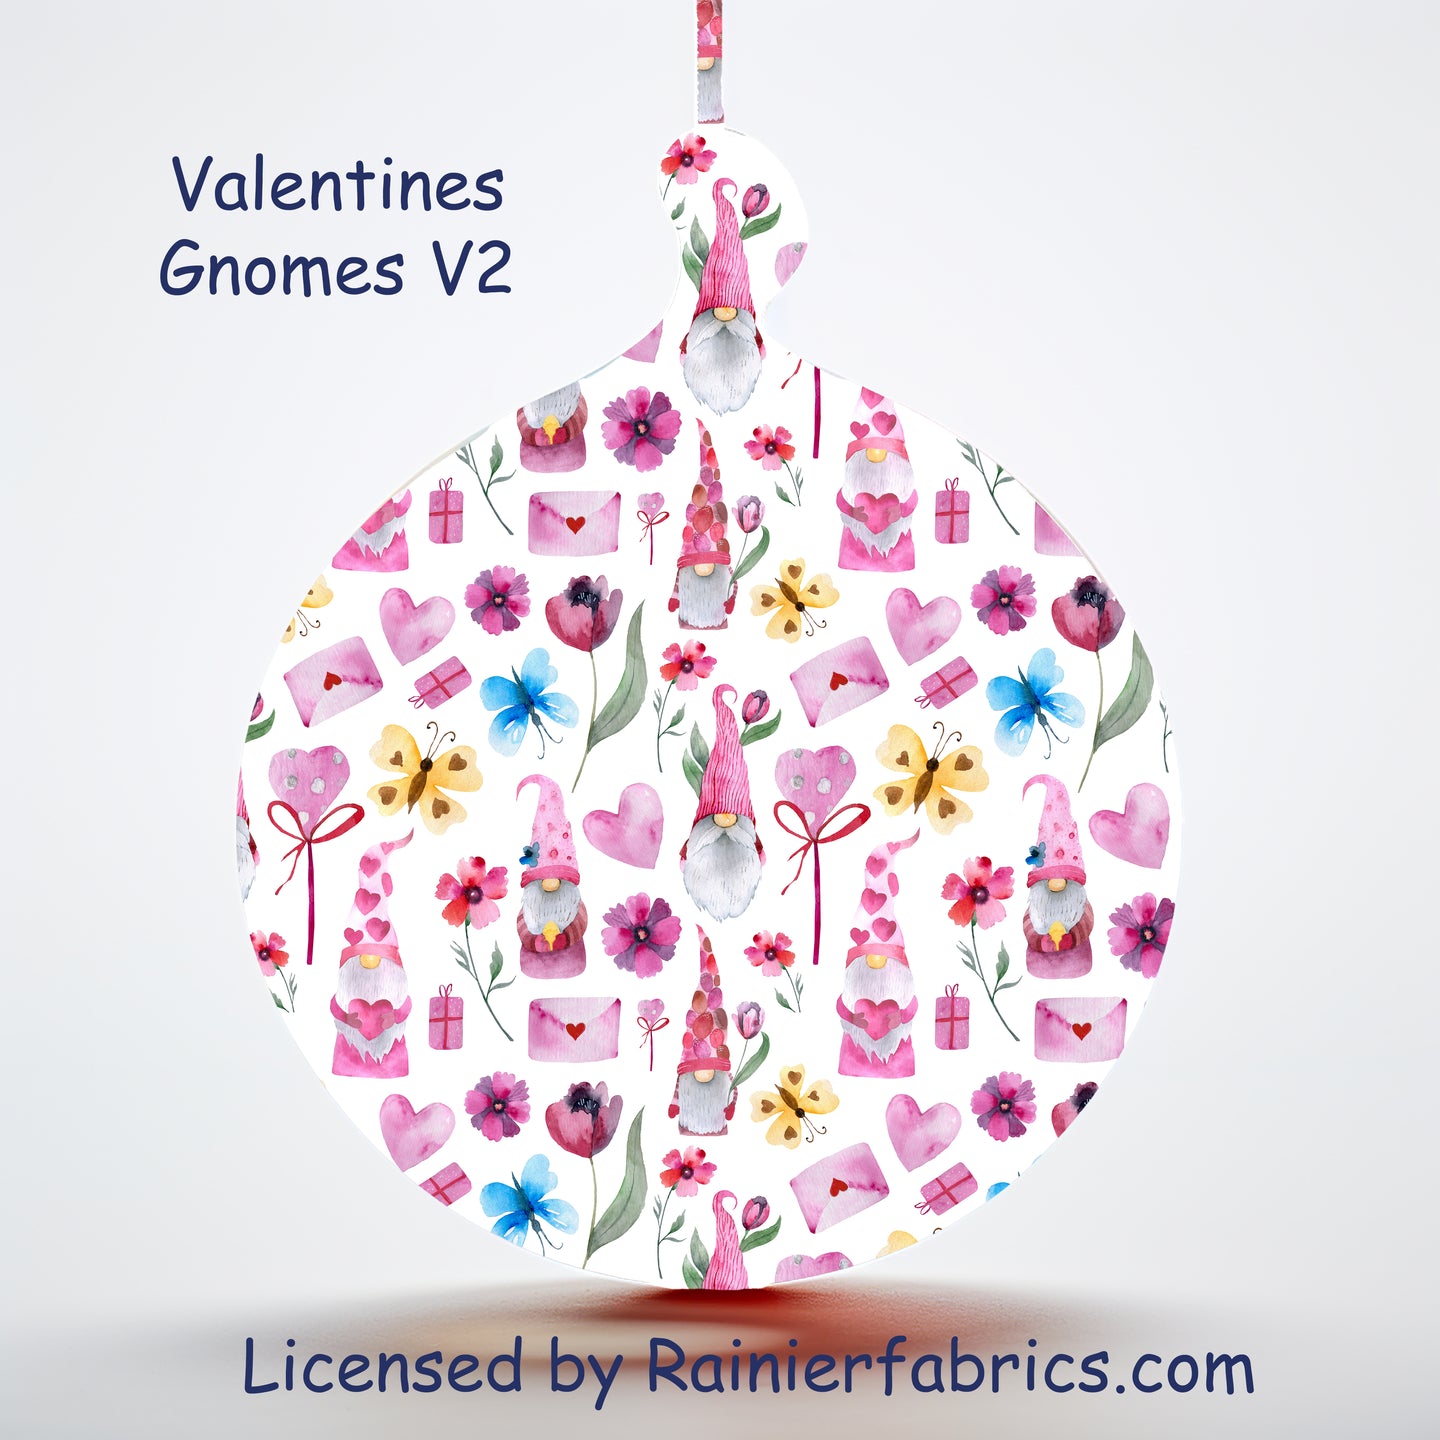 Valentine's Gnomes V2